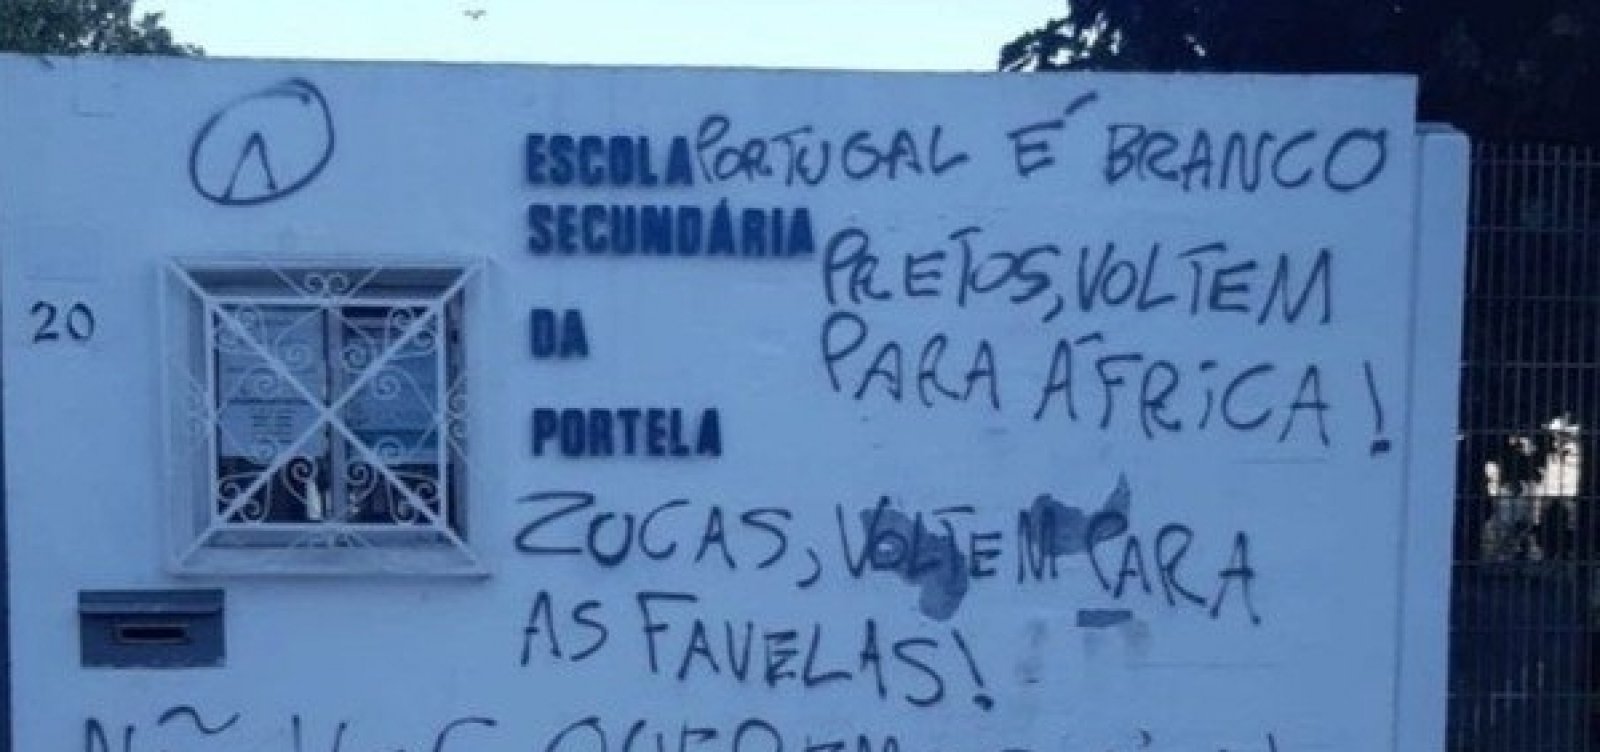 Escolas e universidades em Portugal são pichadas com mensagens contra brasileiros e negros